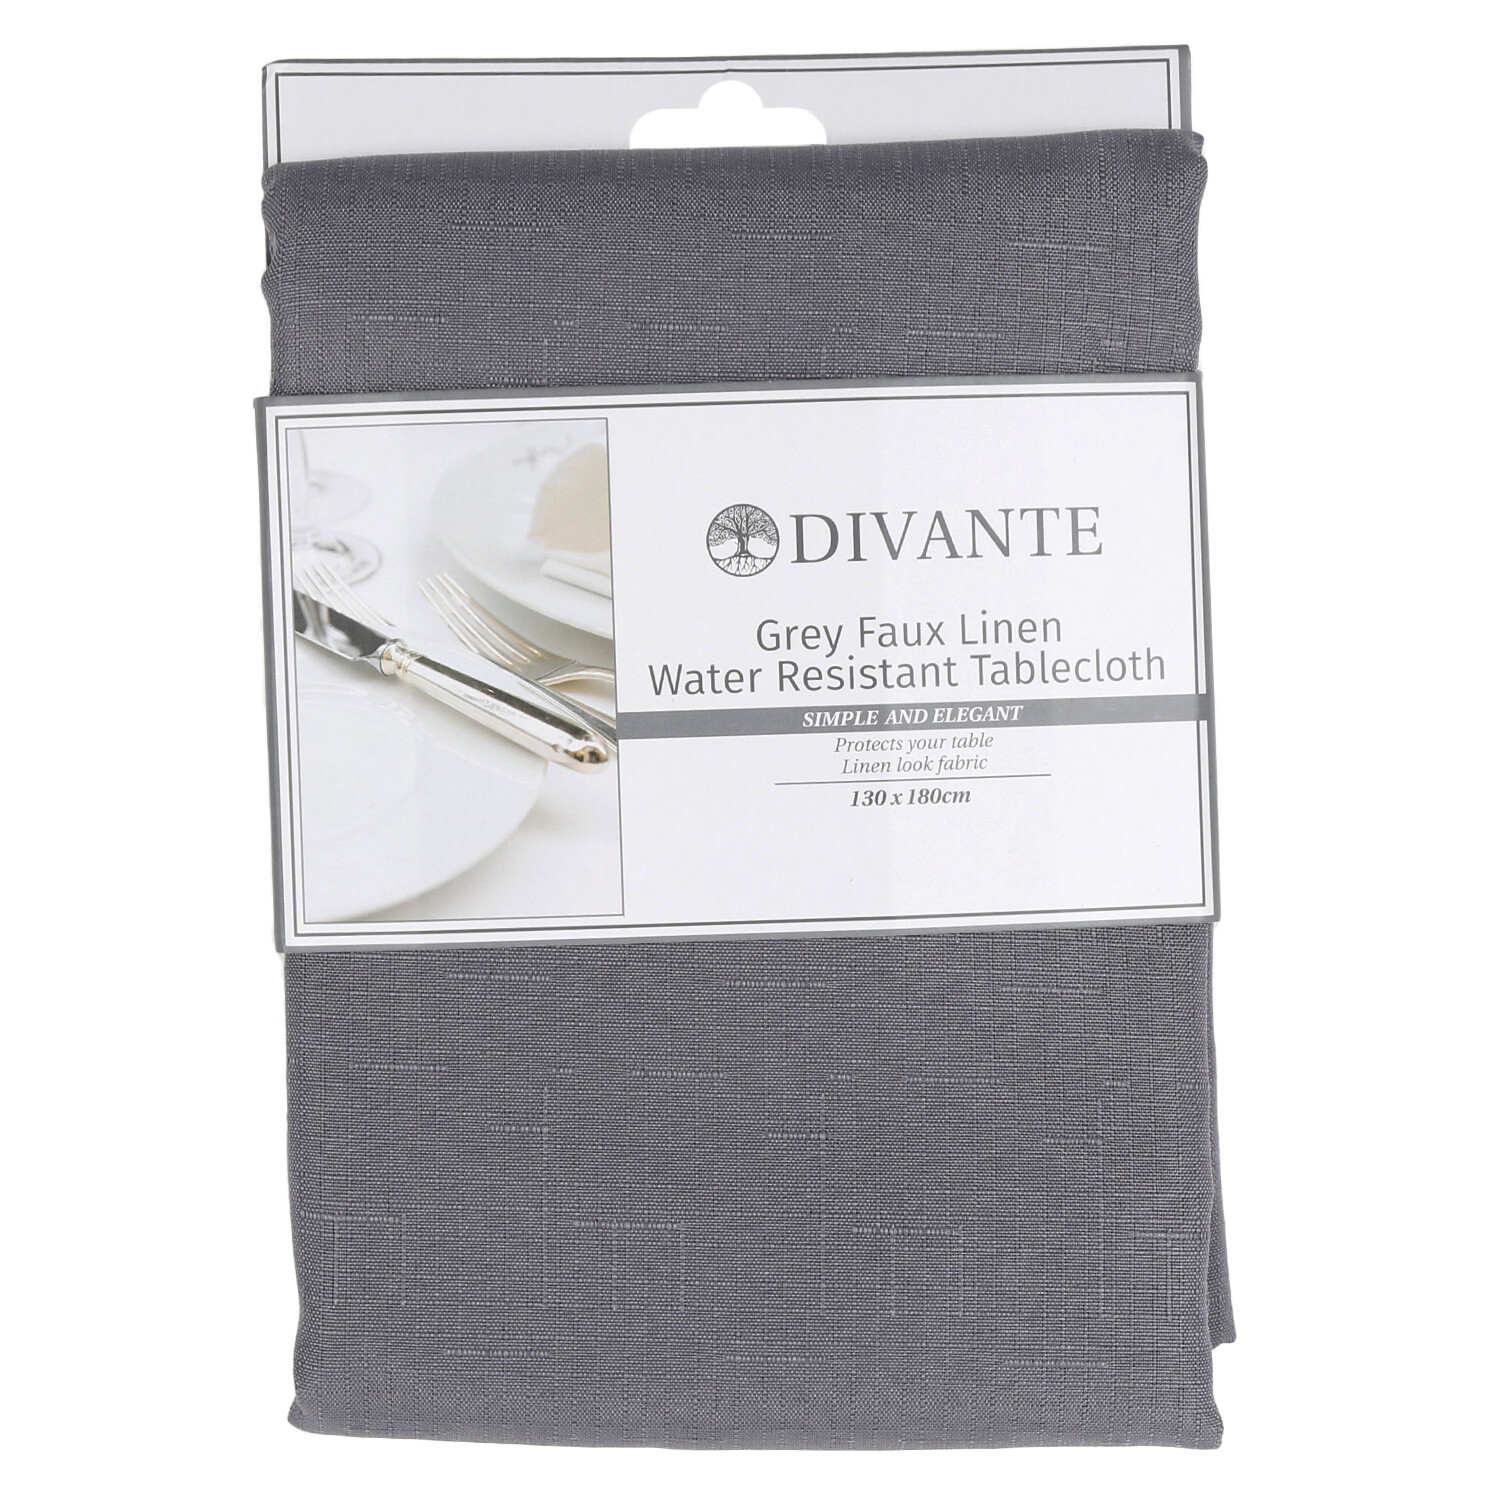 Divante Grey Faux Linen Water Resistant Tablecloth 180 x 130cm Image 2